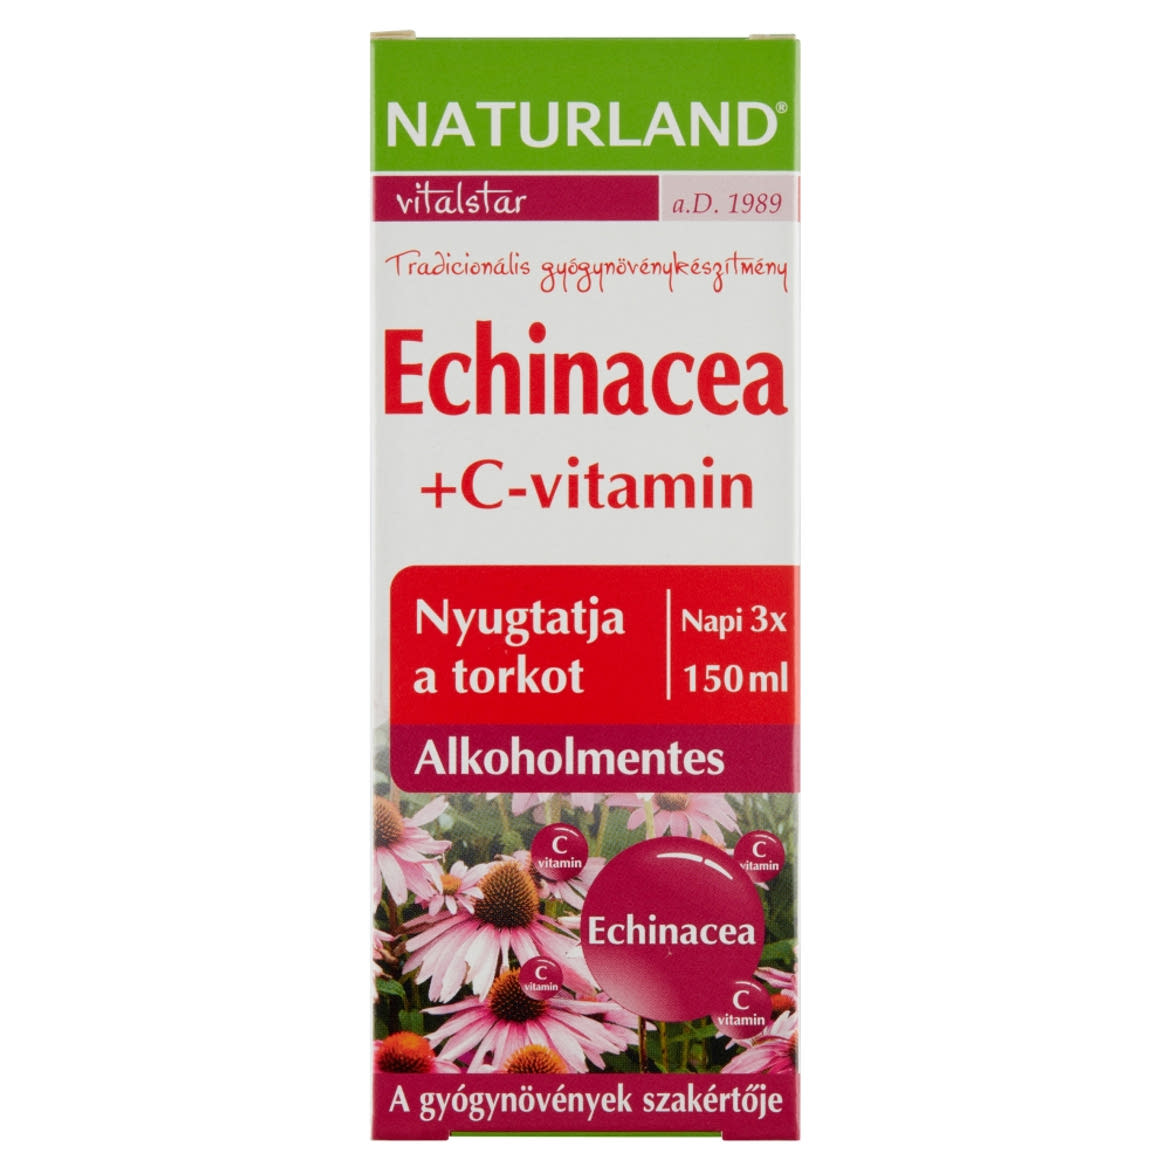 Naturland Vitalstar Echinacea + C-vitamin alkoholmentes folyékony étrend-kiegészítő